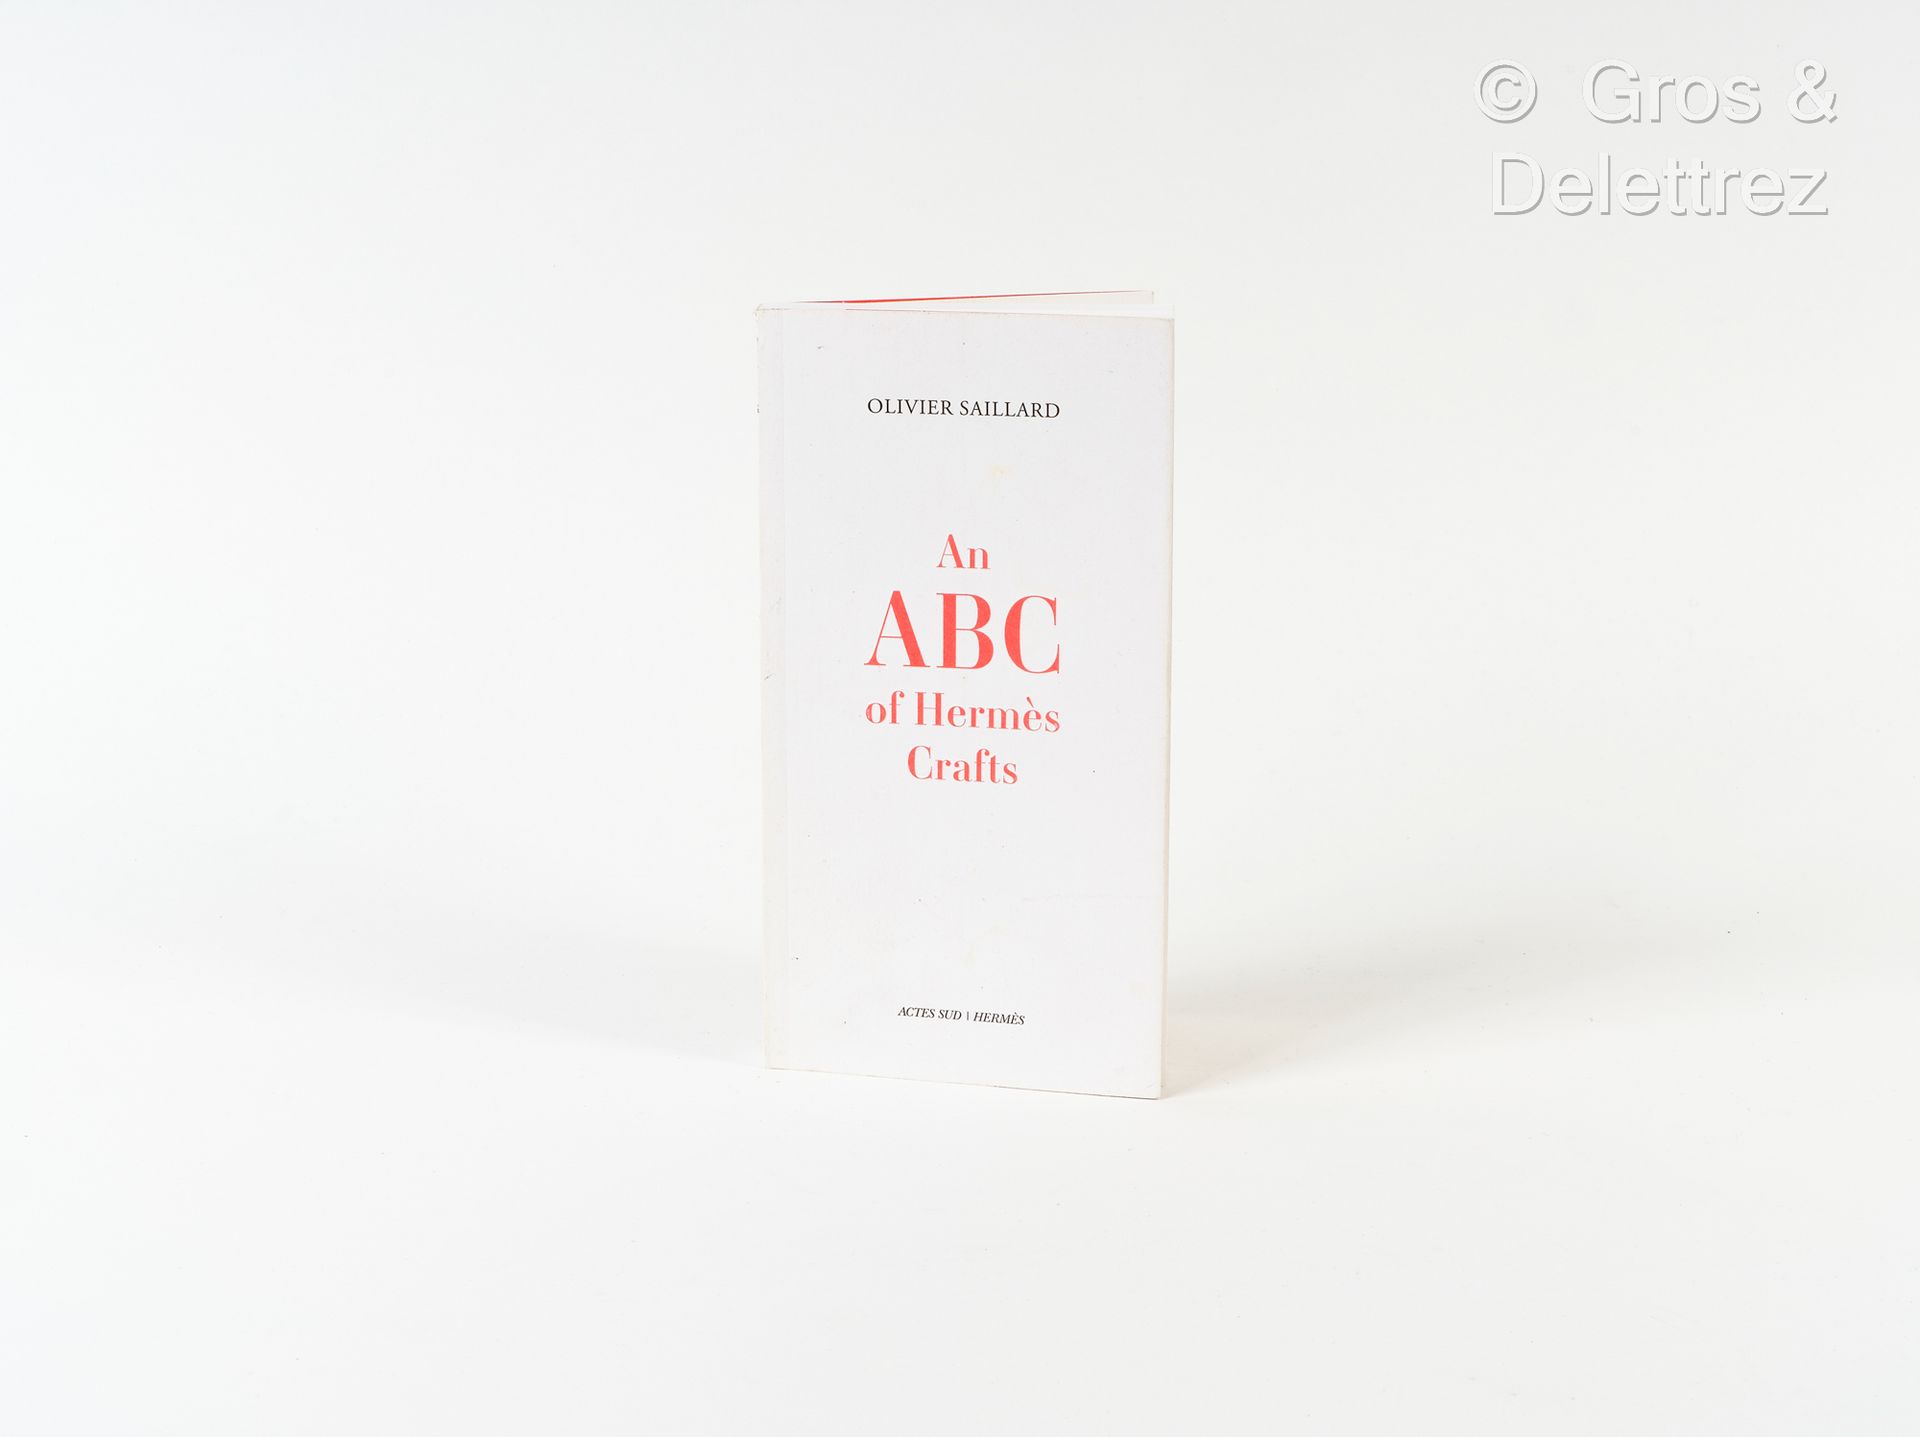 Null Buch "An ABC of Hermès Crafts" von Olivier Saillard bei Actes Sud 2012.